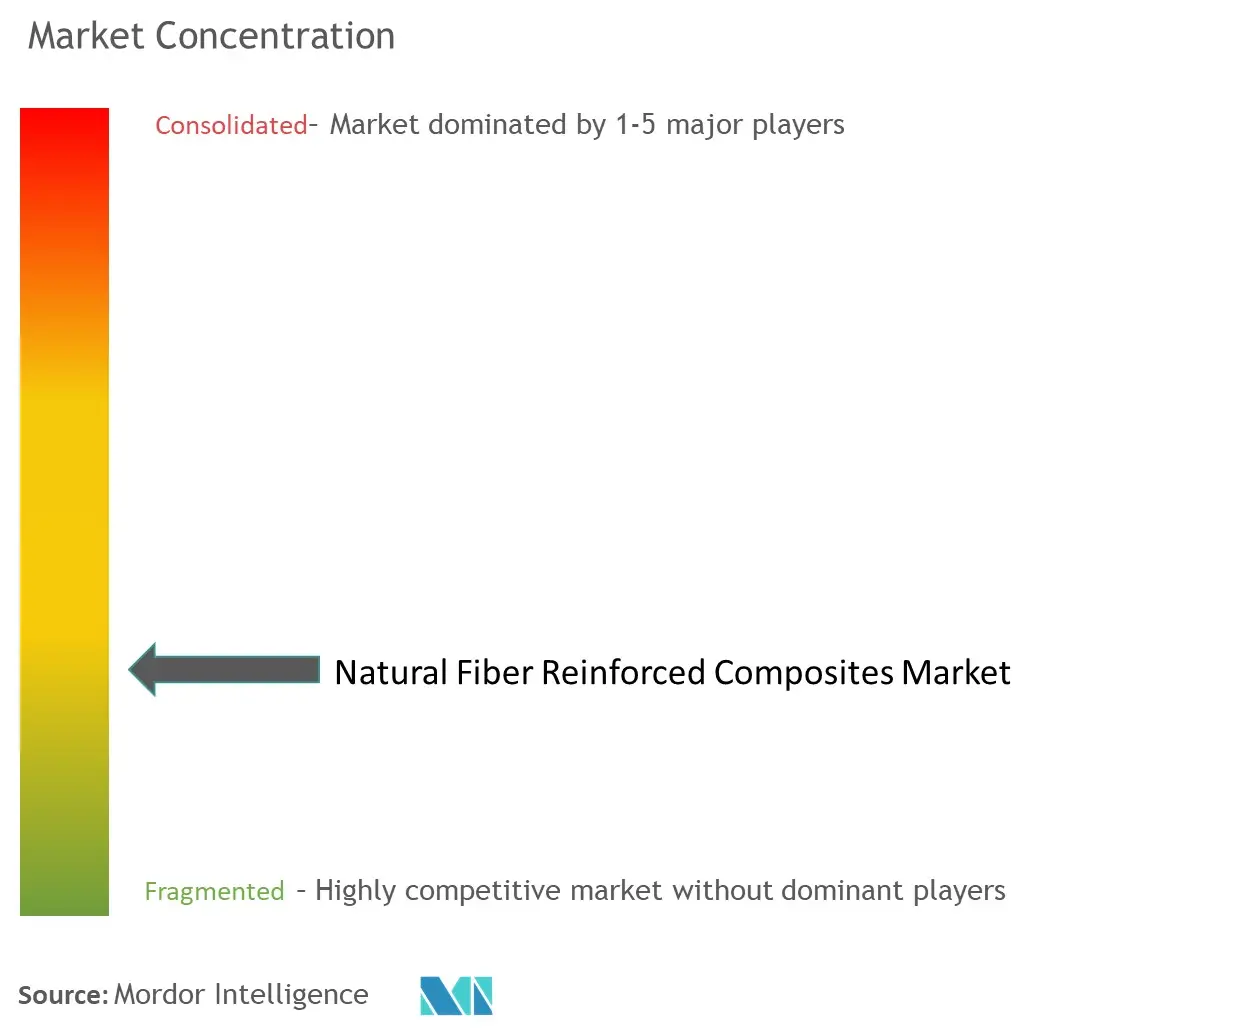 Natural Fiber Reinforced Composites Market Concentration